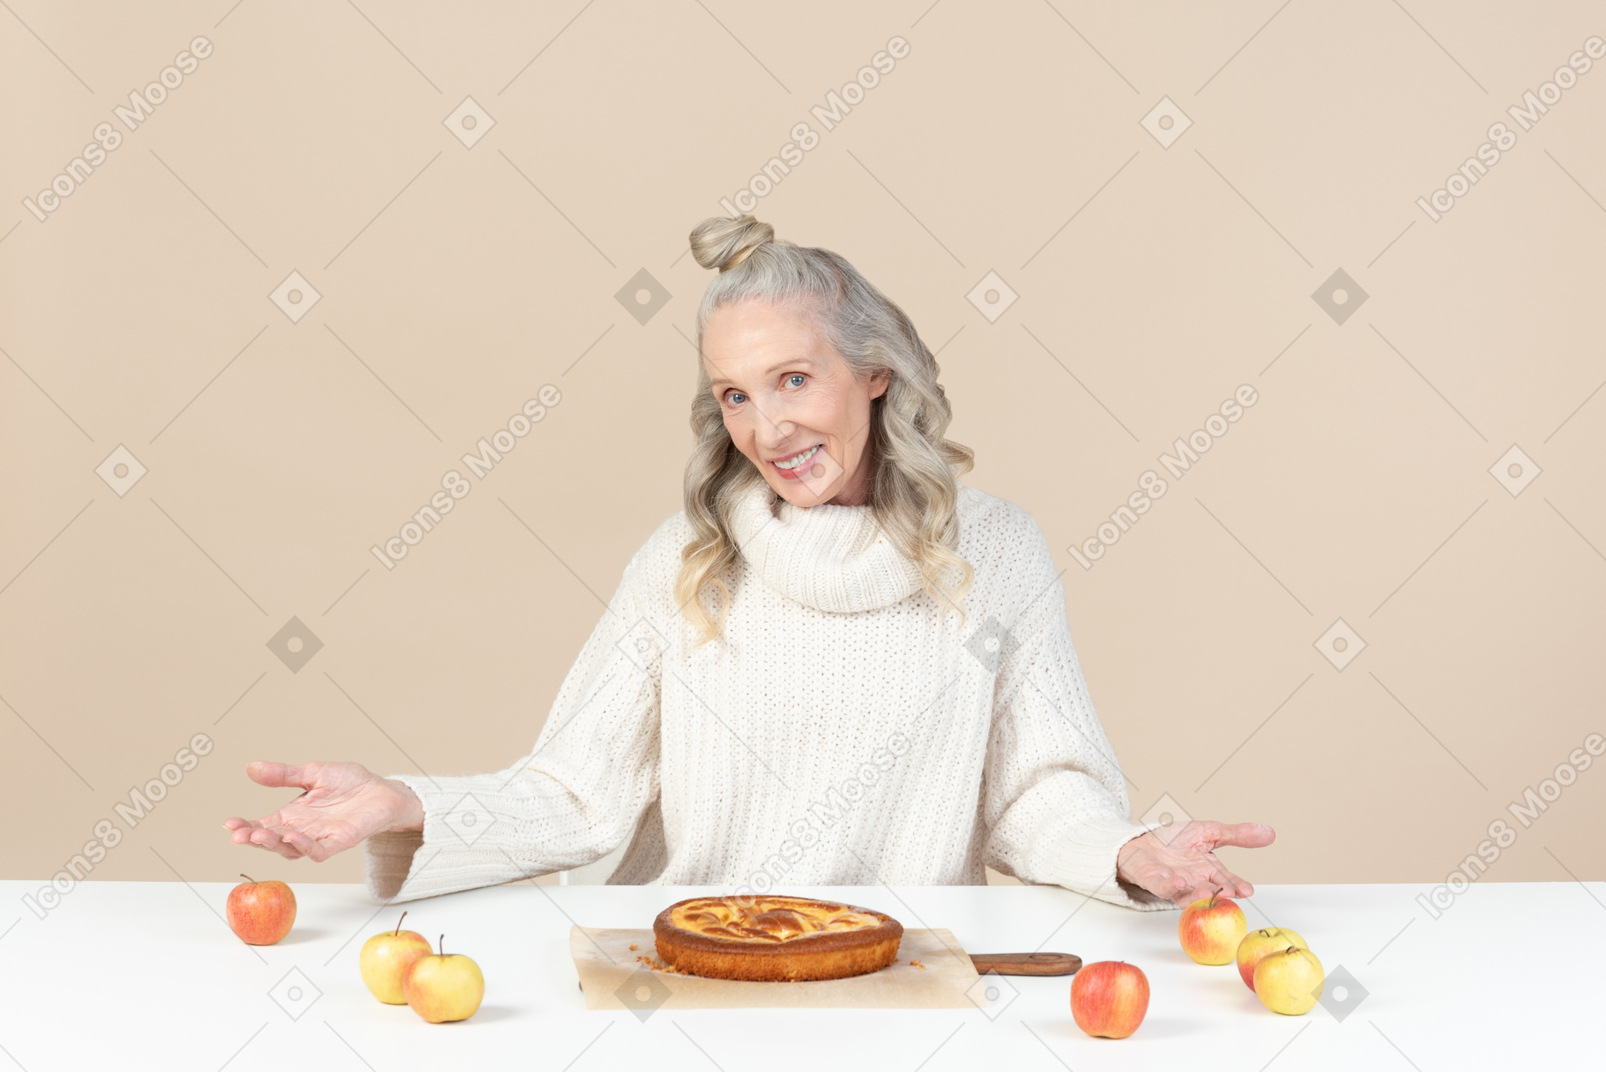 그녀의 갓 구운 사과 파이를 시도하는 우아한 늙은 여자